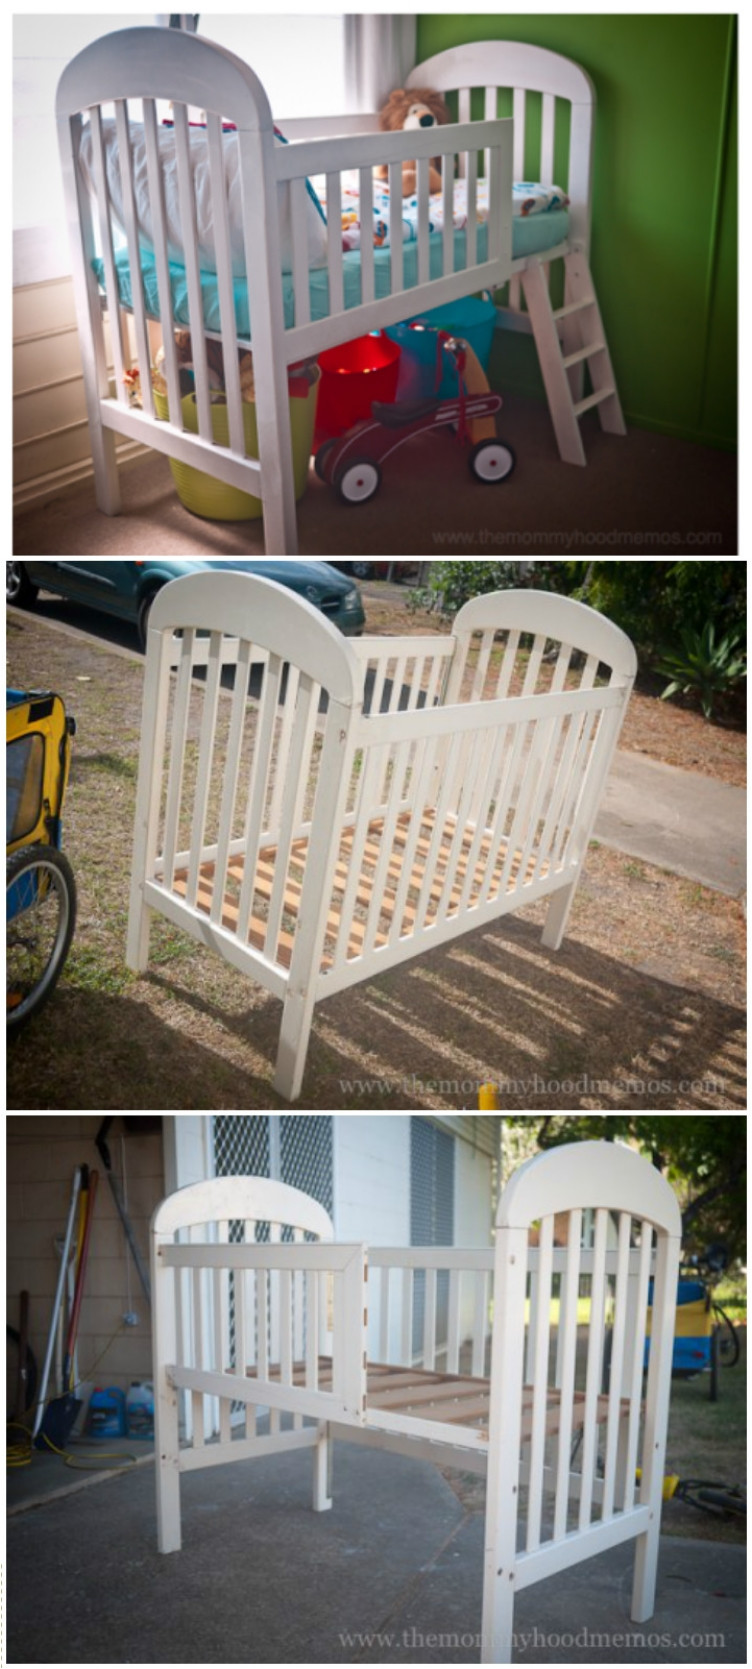 DIY Toddler Bed From Crib
 28 DIY’s to Repurpose Old Furniture